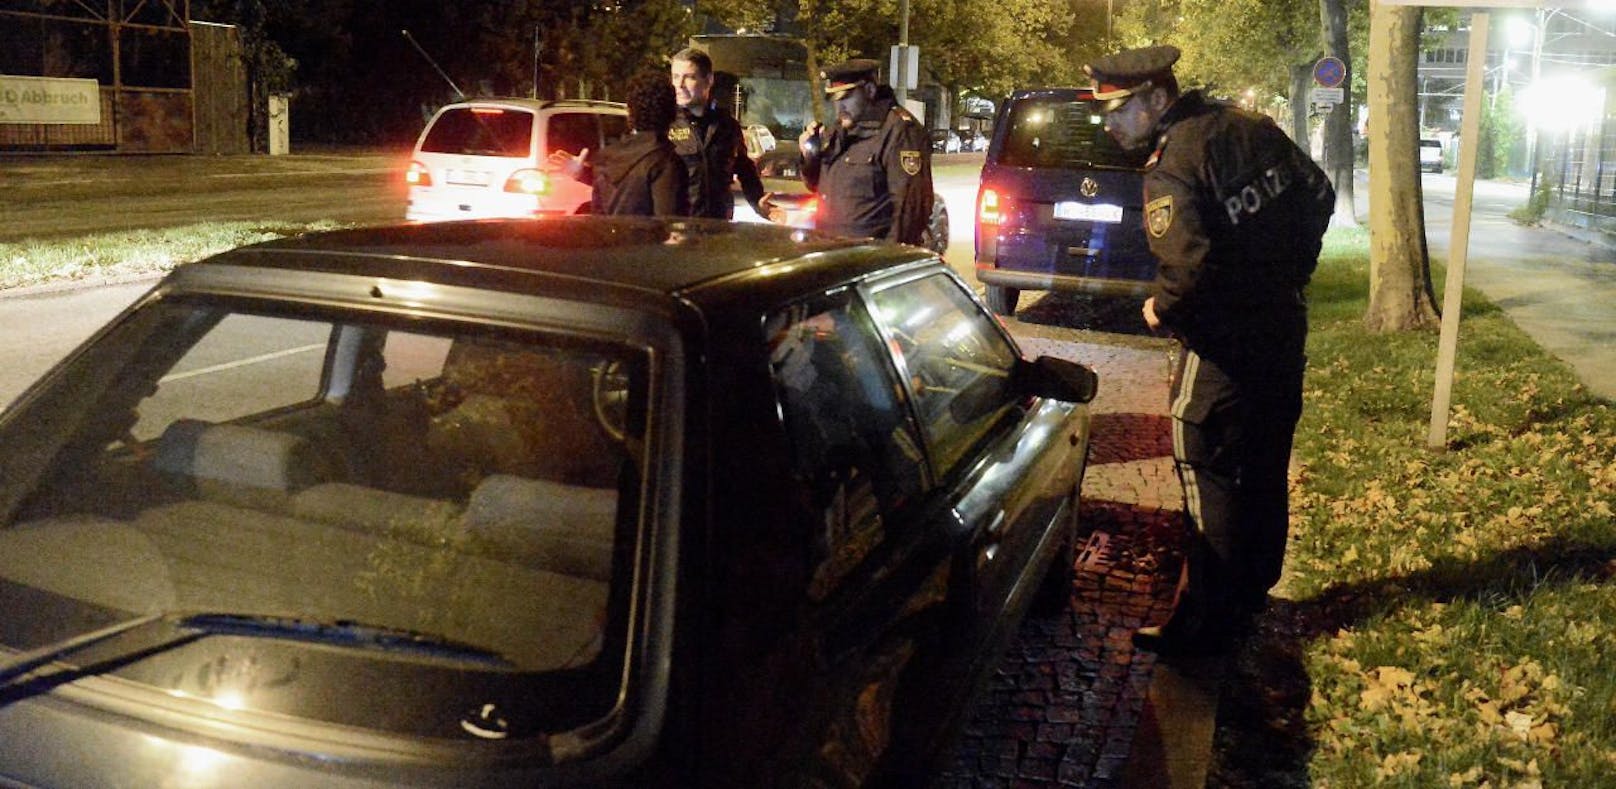 Die Polizei zog den Wiener Autofahrer aus dem Verkehr